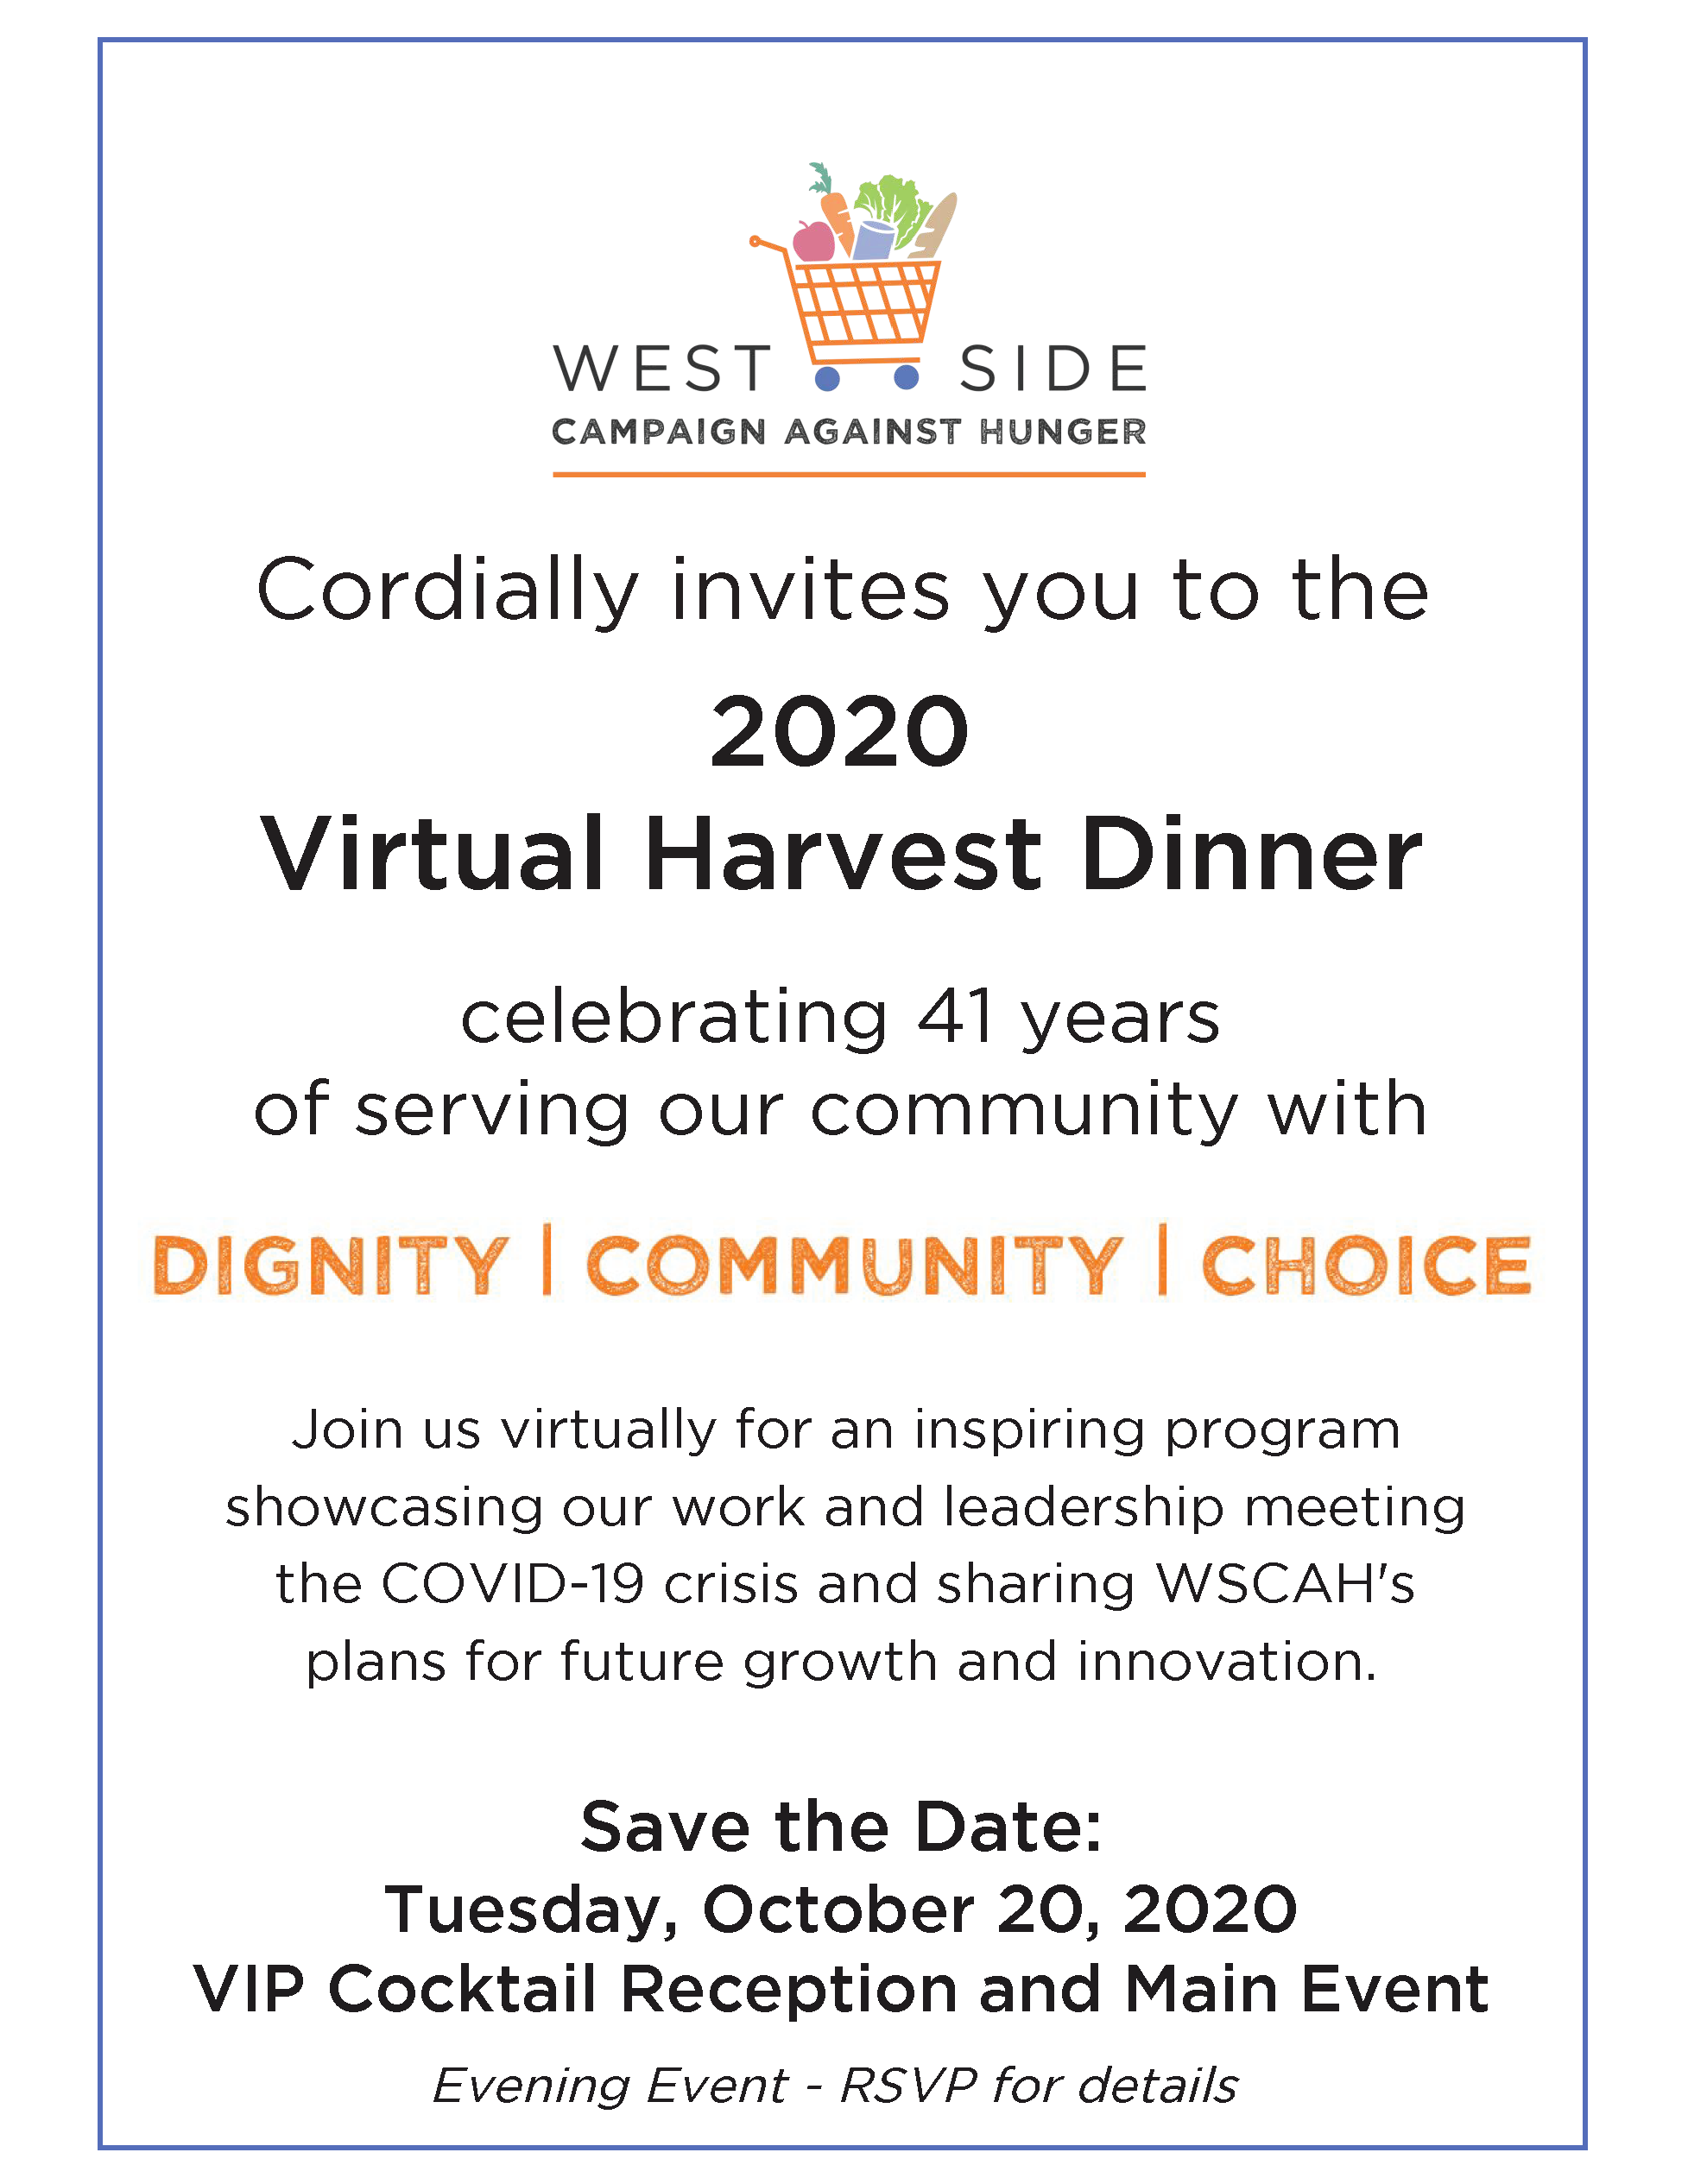 West Side Campaign Against Hunger Harvest Dinner